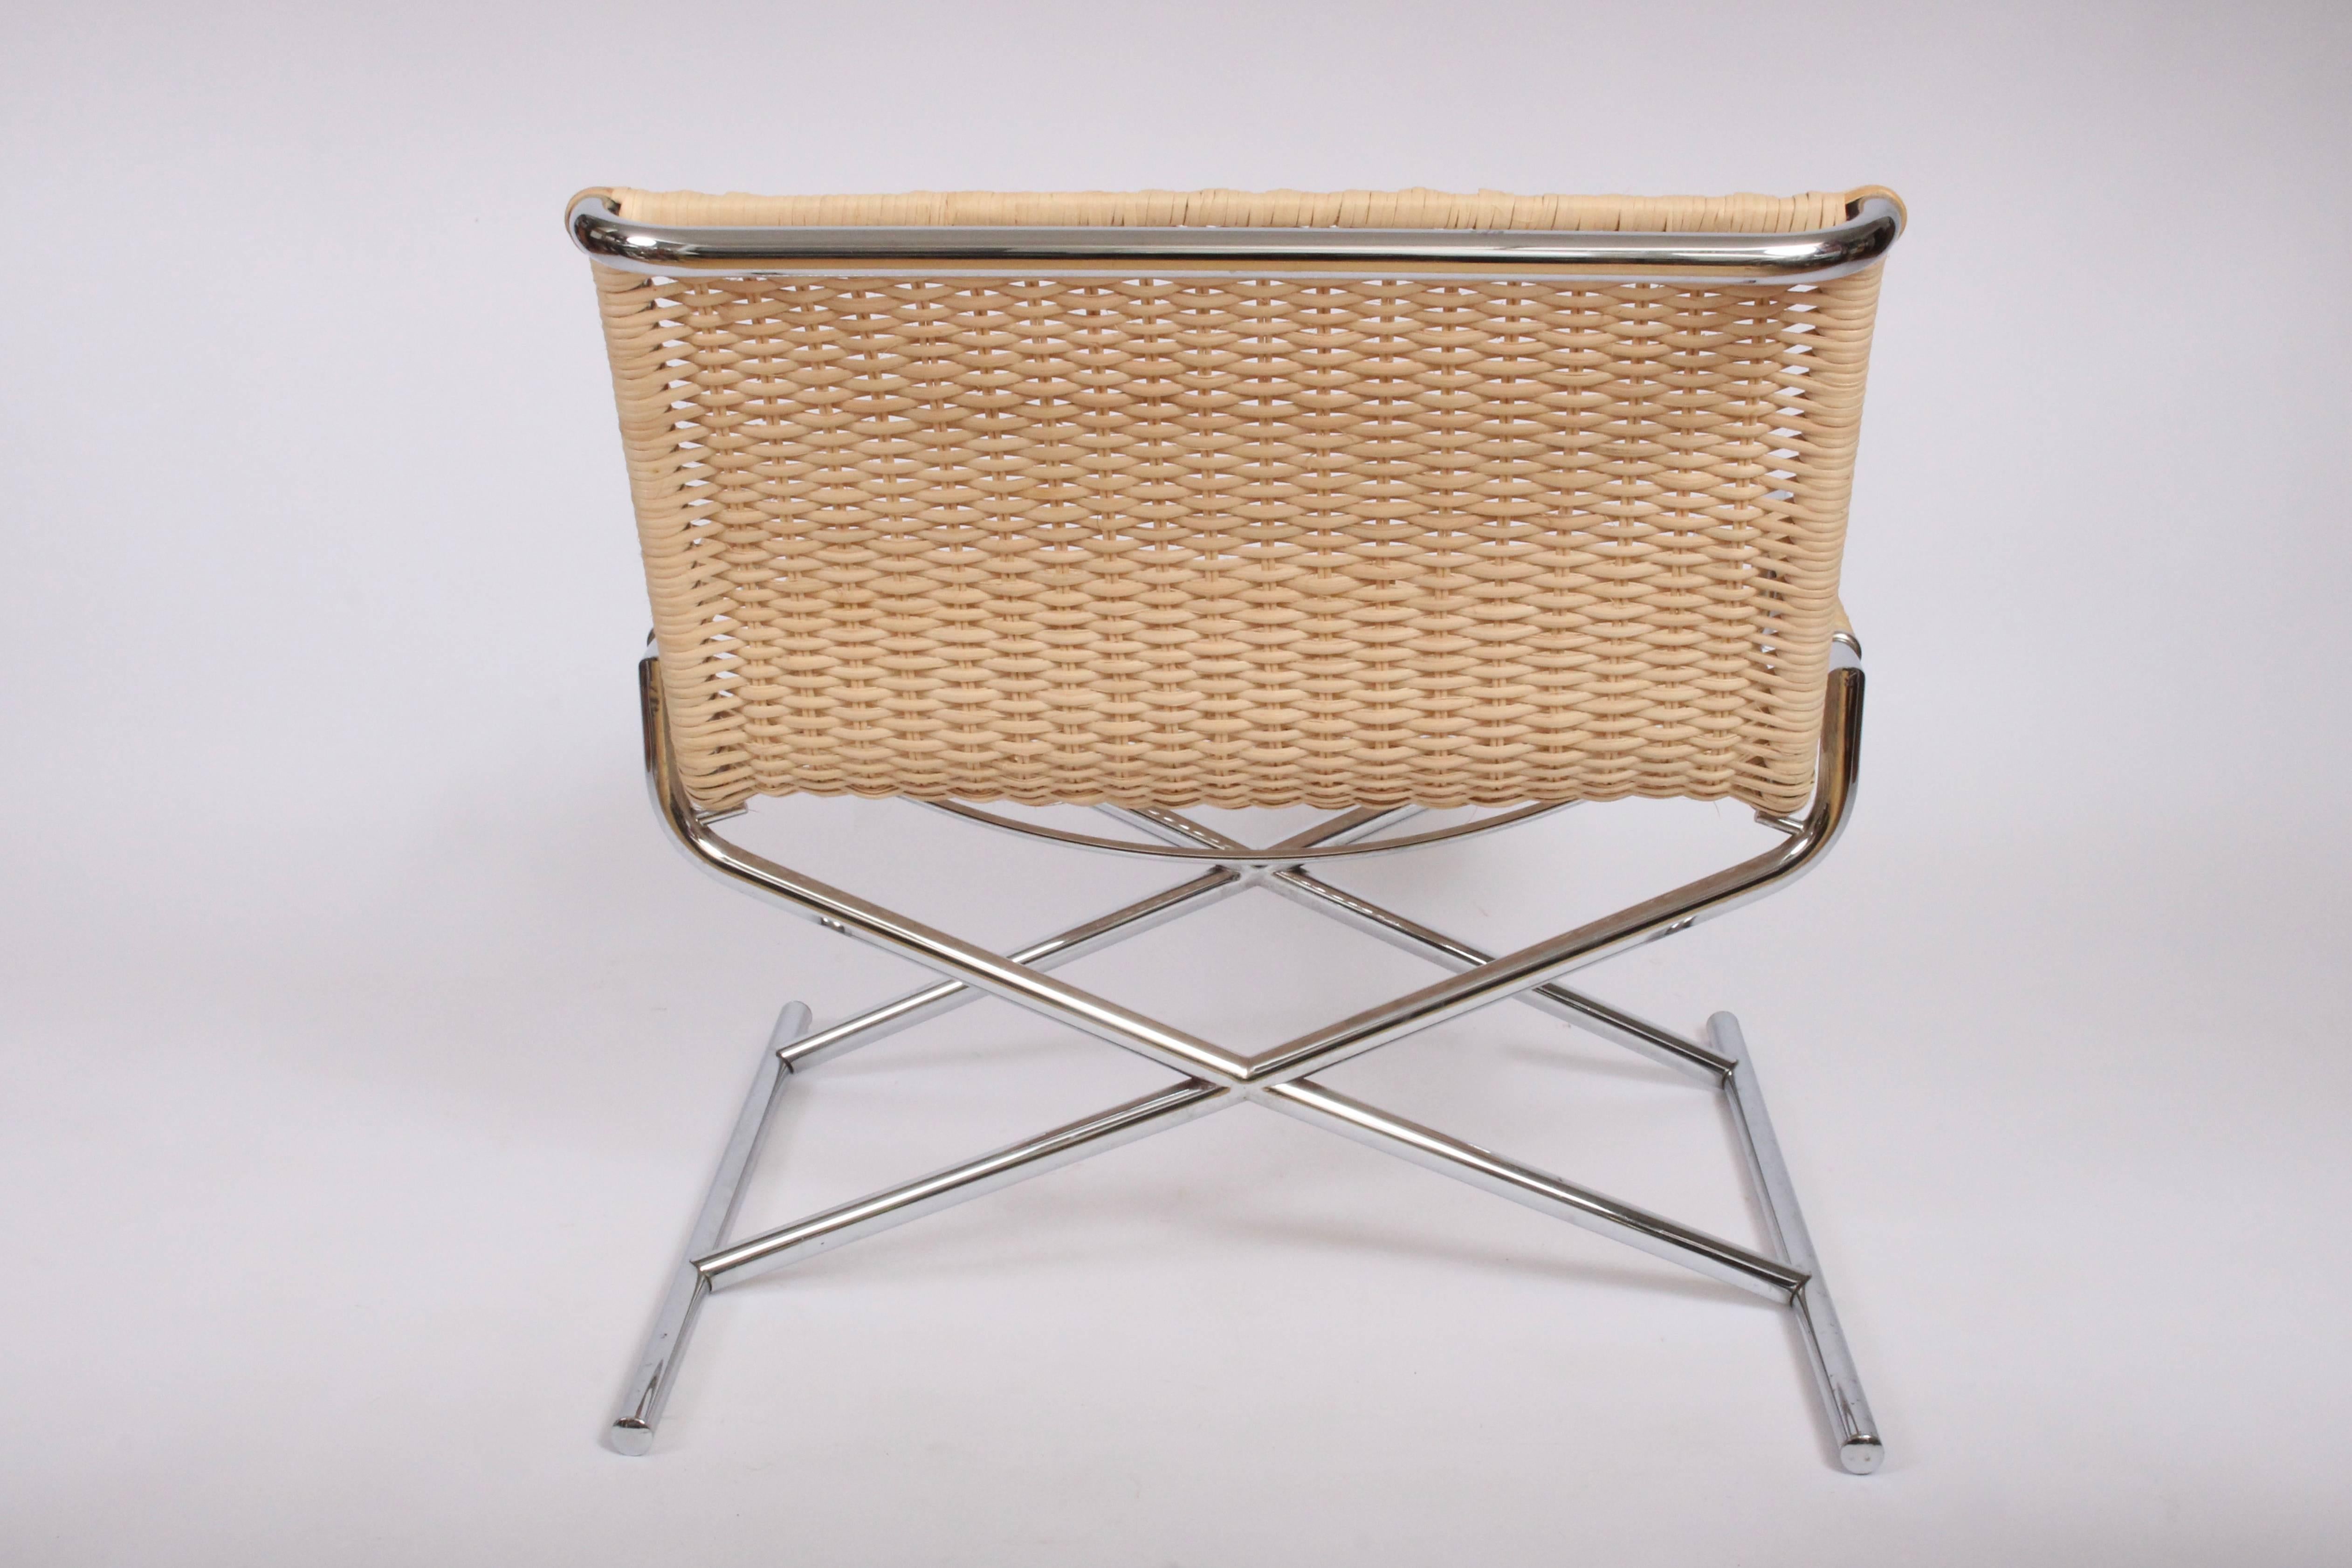 Chaise longue originale en acier chromé et canne par Ward Bennett pour Brickell. Avec une structure vintage en X chromé, une assise en rotin naturel et non teinté, un dossier incurvé, des accoudoirs recouverts, et un support de dossier en chrome.